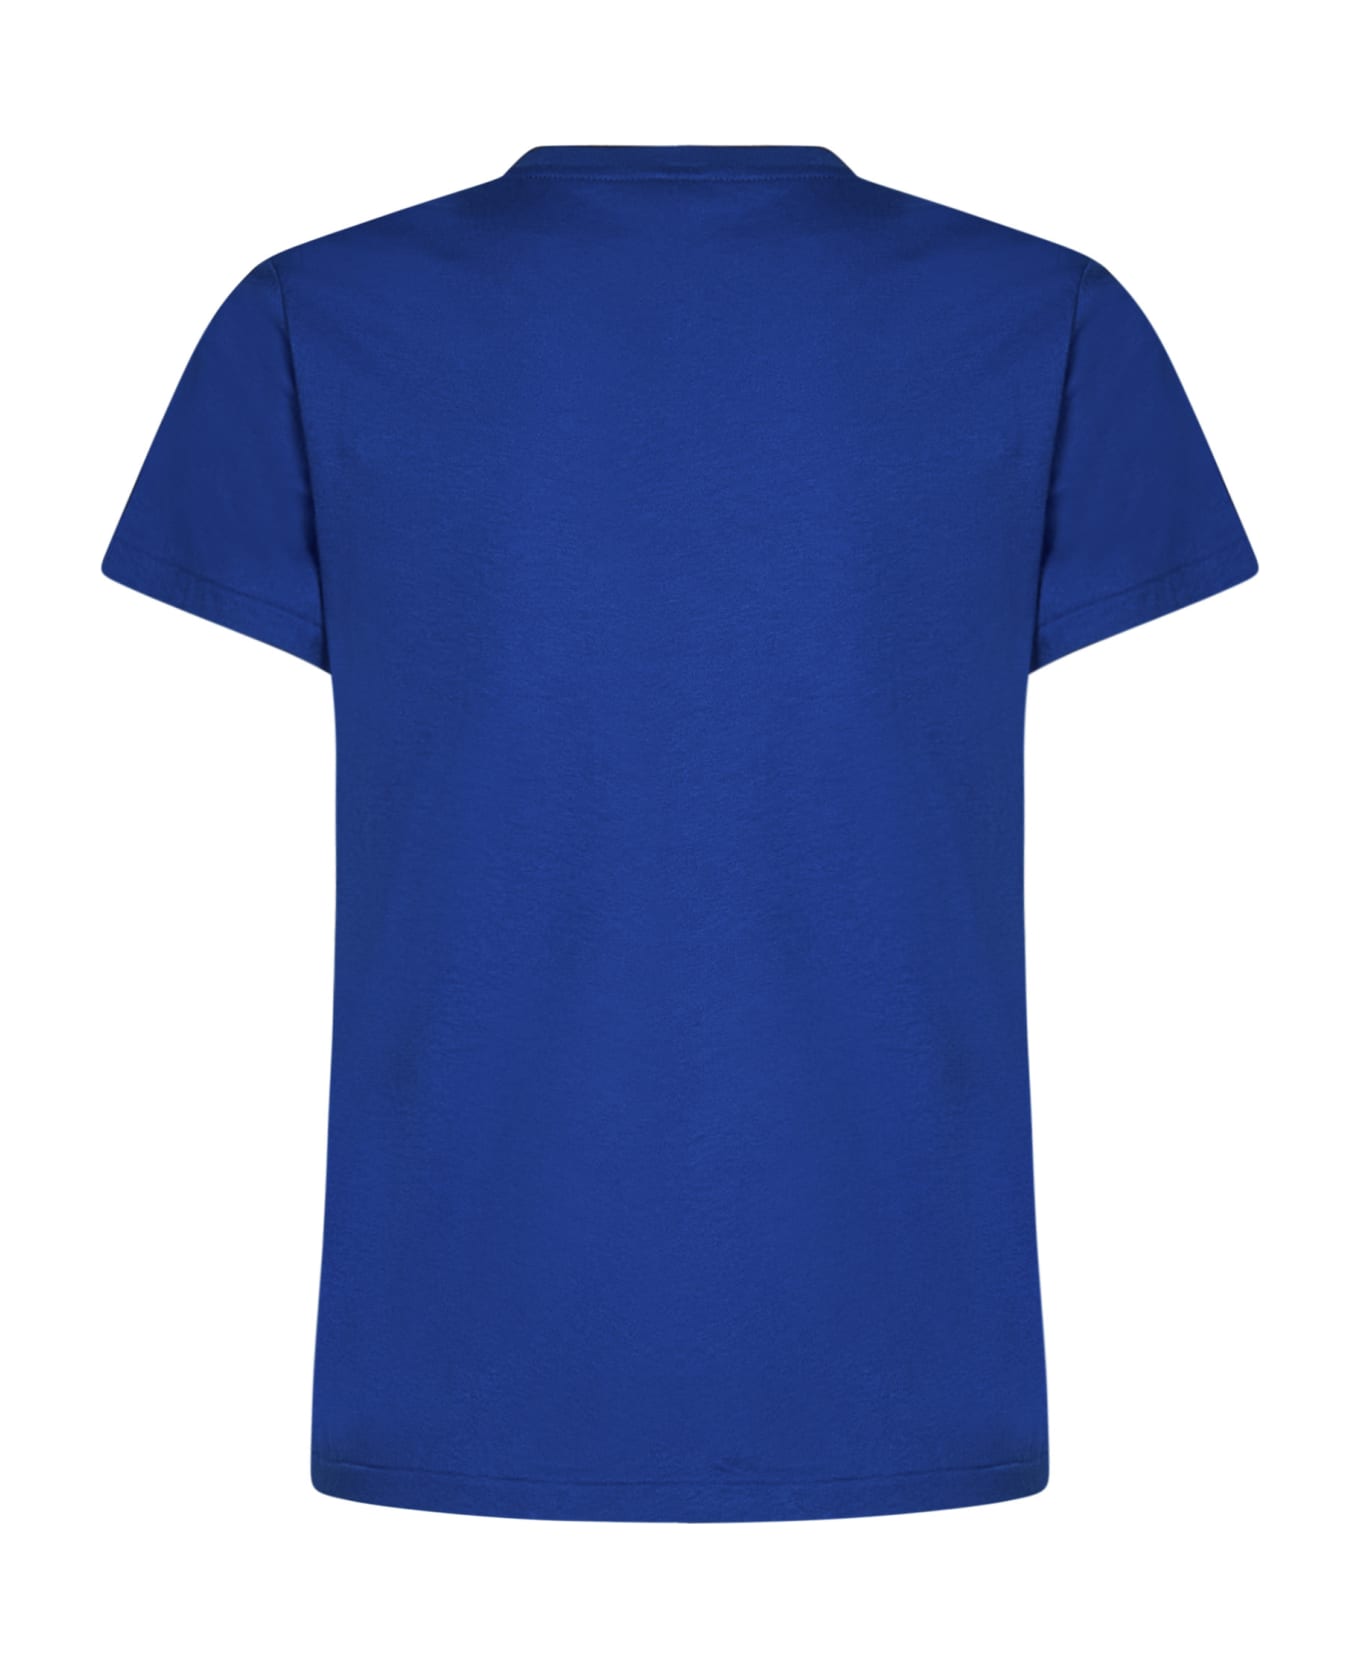 Polo Ralph Lauren T-shirt Polo Ralph Lauren - BLUETTE